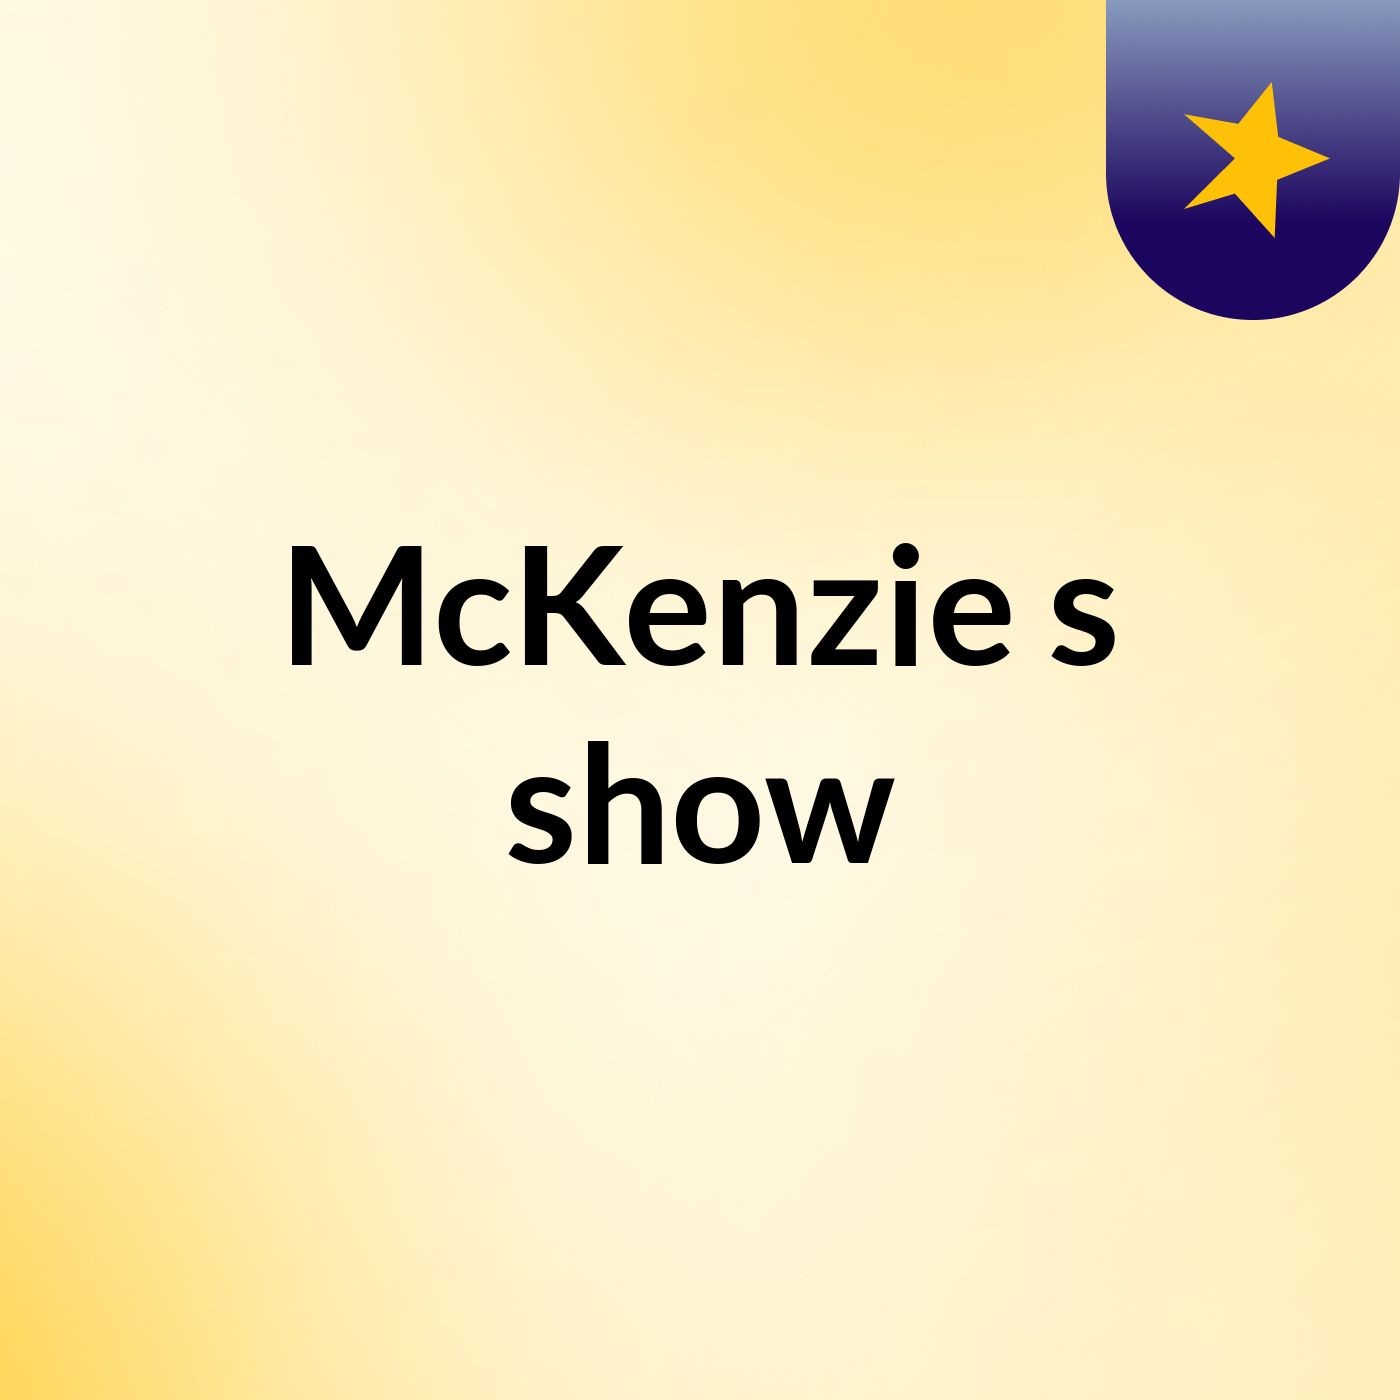 McKenzie's show